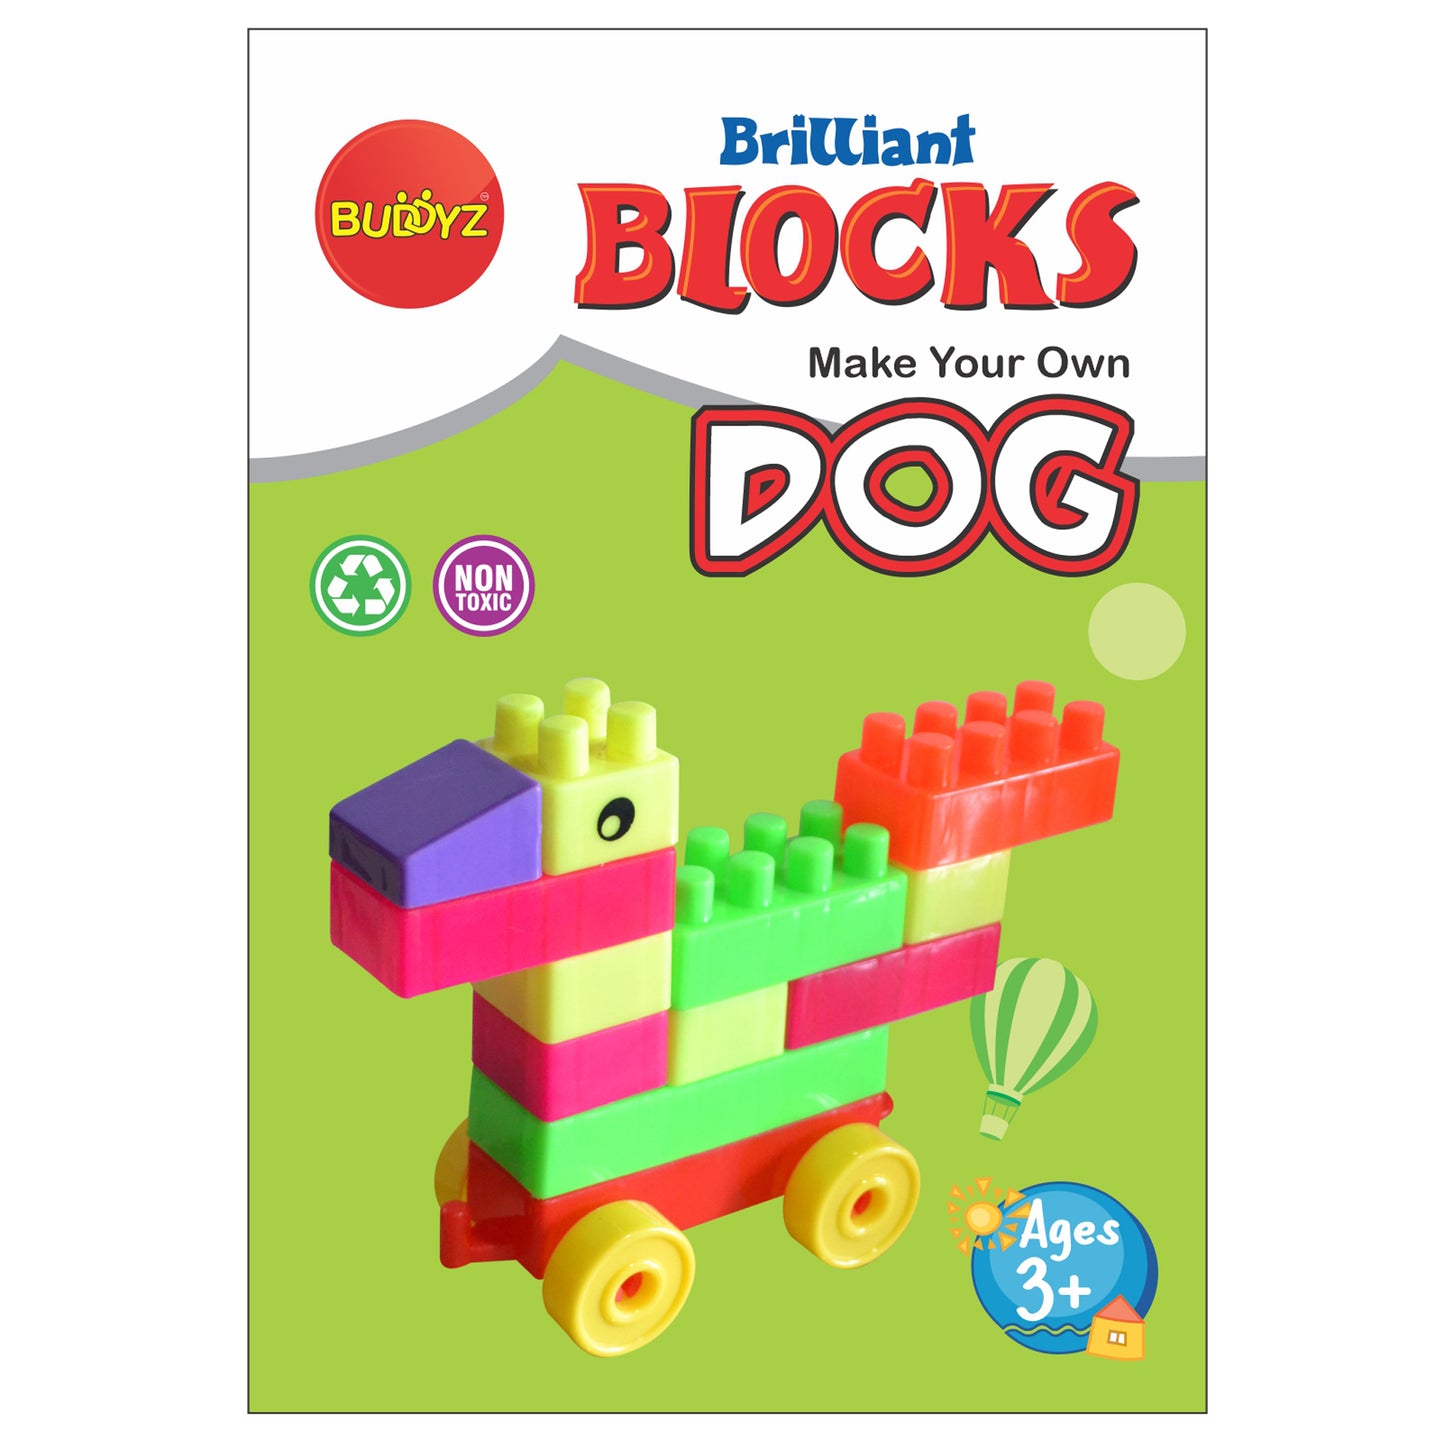 Brilliant Blocks - Dog